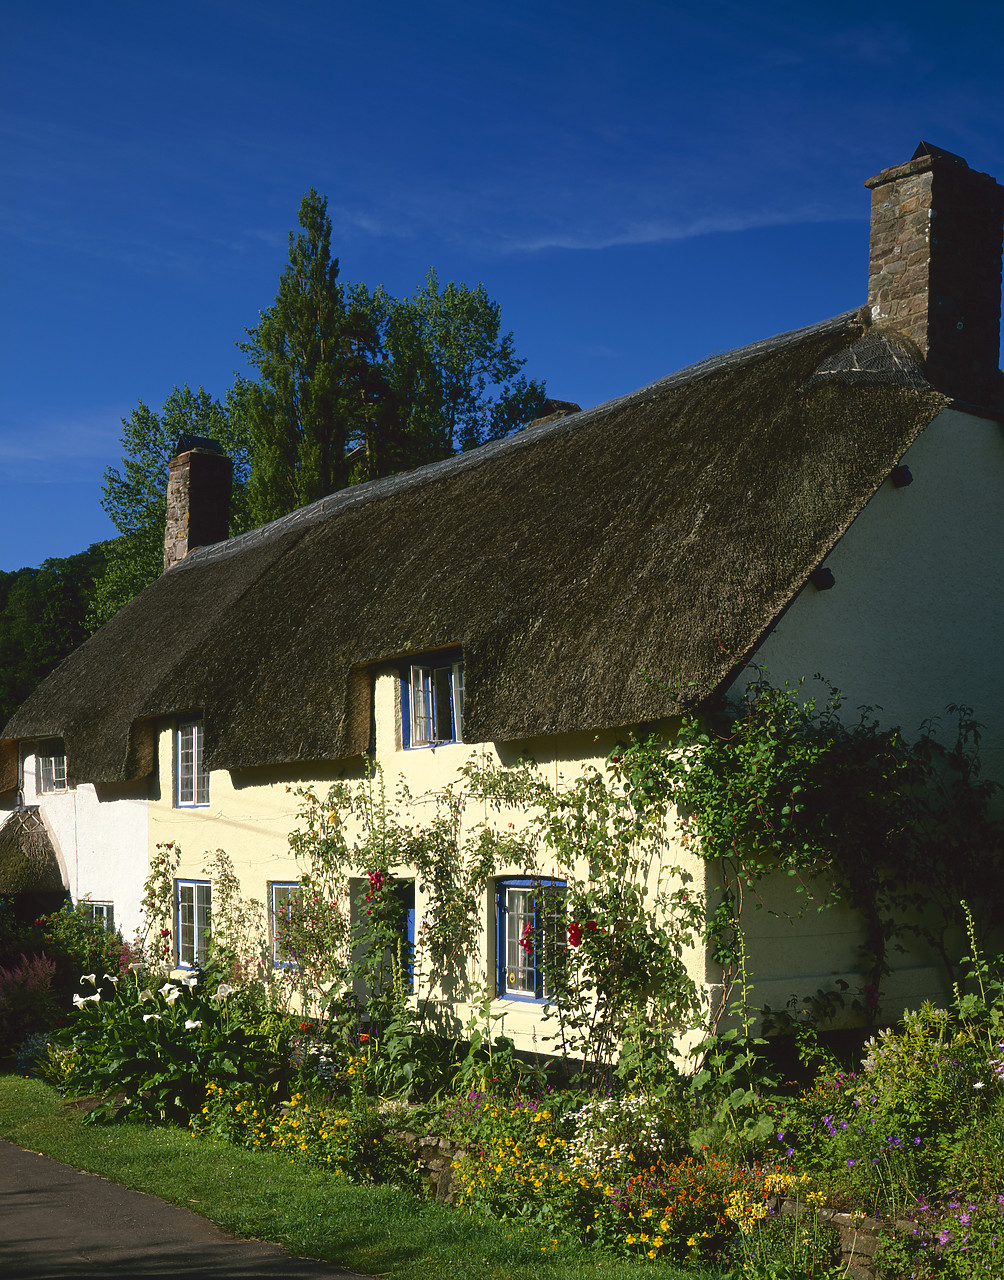 #020638-7 - Thatched Cottage & Garden, Dunster, Somerset, England